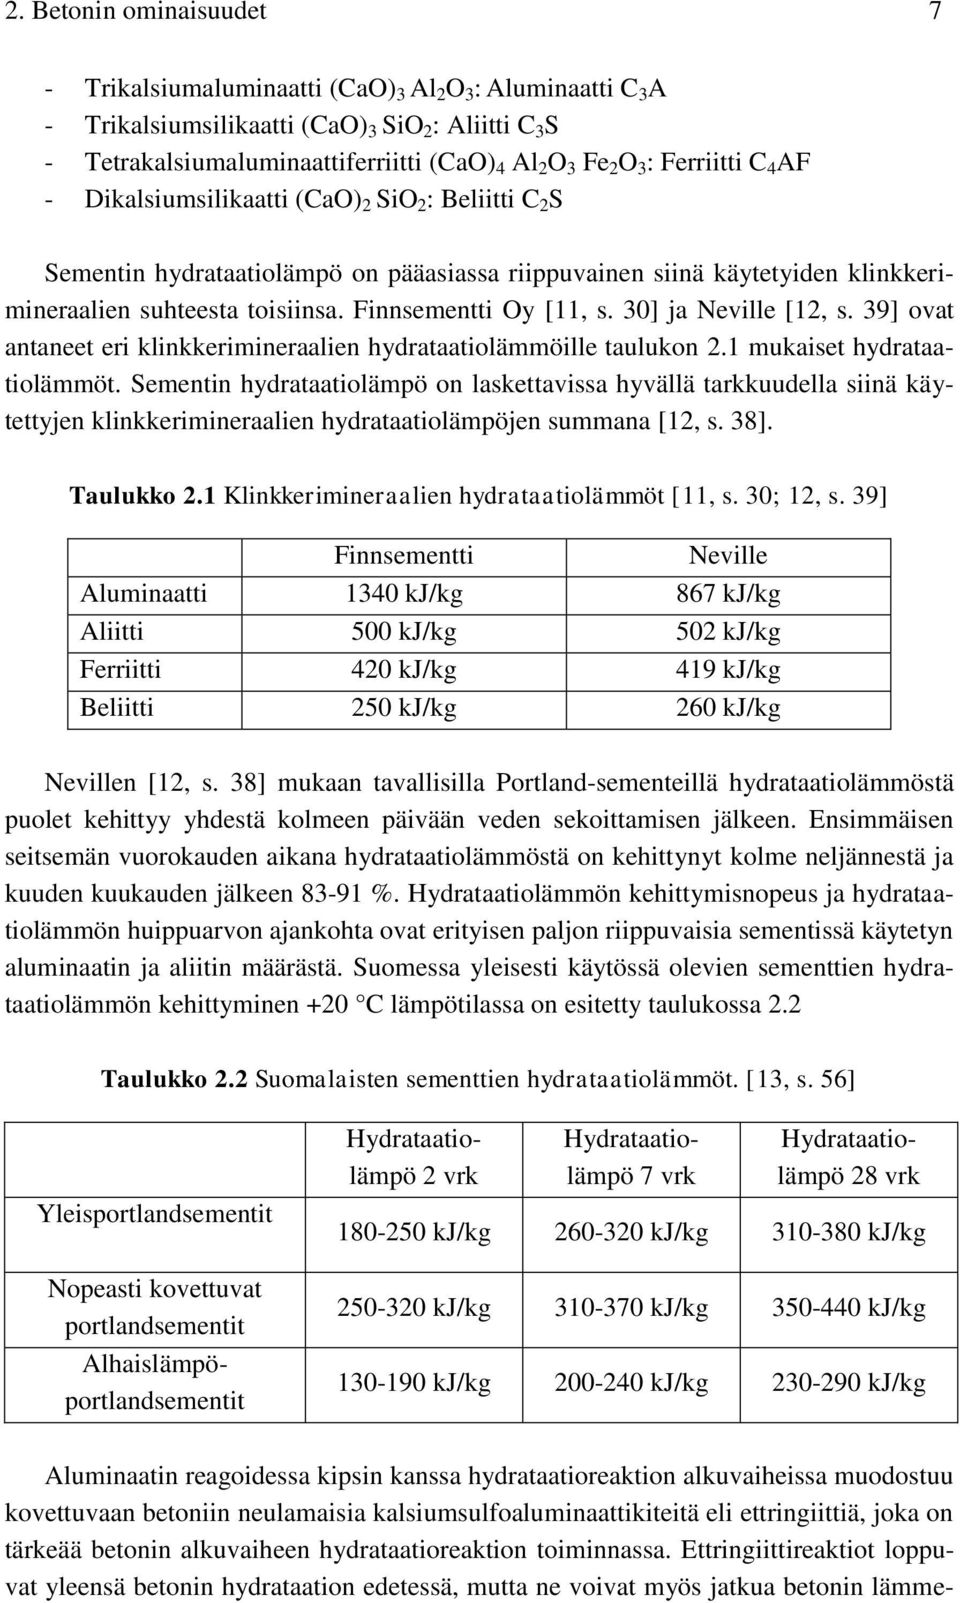 Finnsementti Oy [11, s. 30] ja Neville [12, s. 39] ovat antaneet eri klinkkerimineraalien hydrataatiolämmöille taulukon 2.1 mukaiset hydrataatiolämmöt.